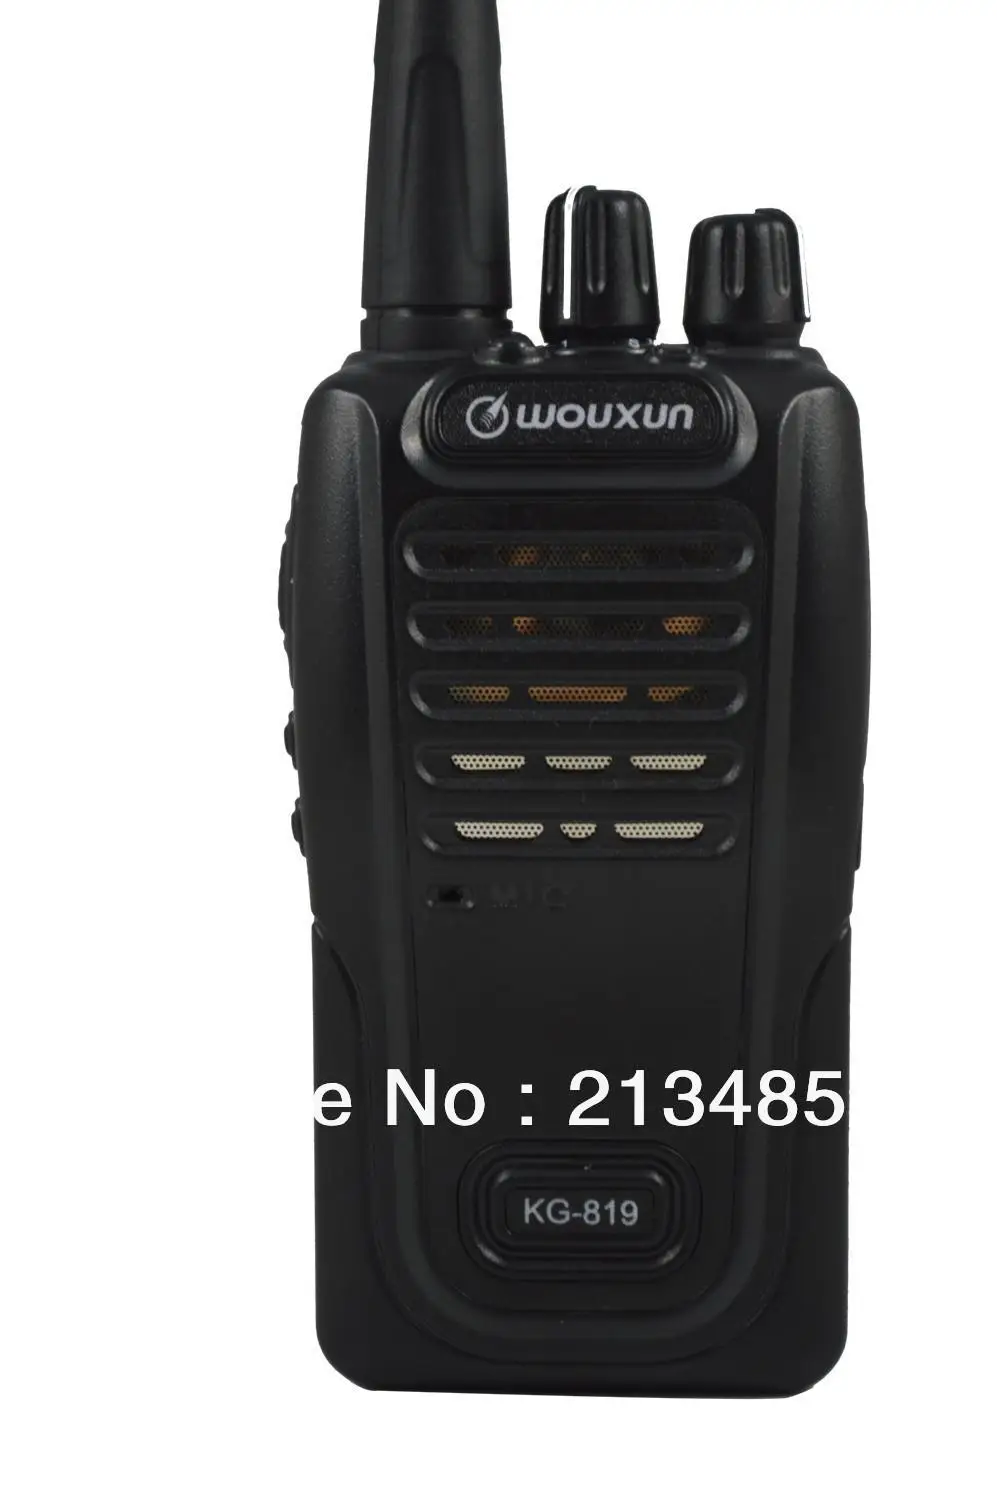 WOUXUN KG-819 UHF 400-470MHz 4W 16CH Two-way Radio